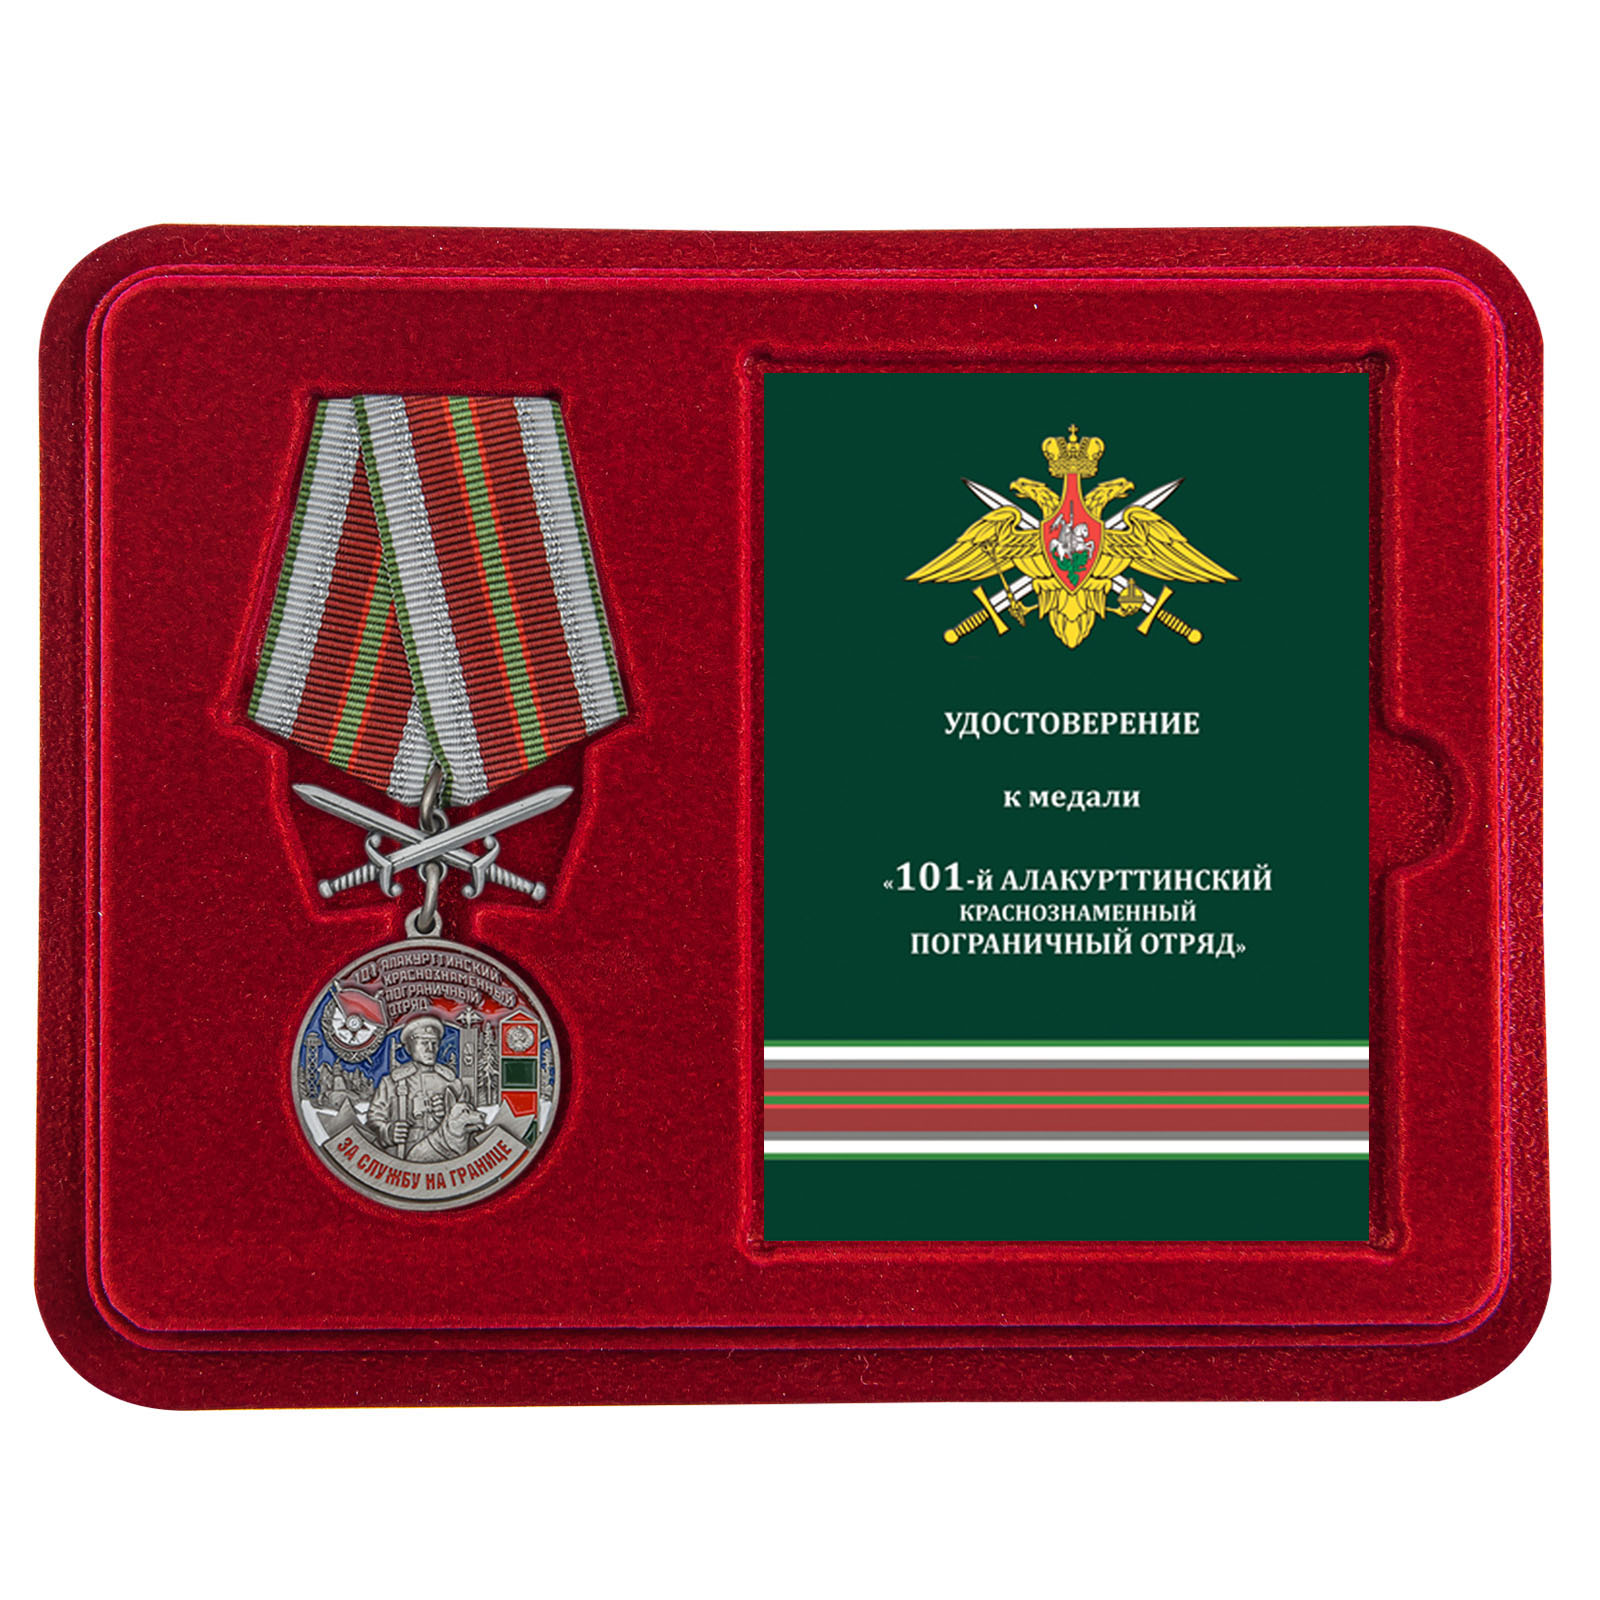 Купить медаль За службу в Алакурттинском пограничном отряде в подарок